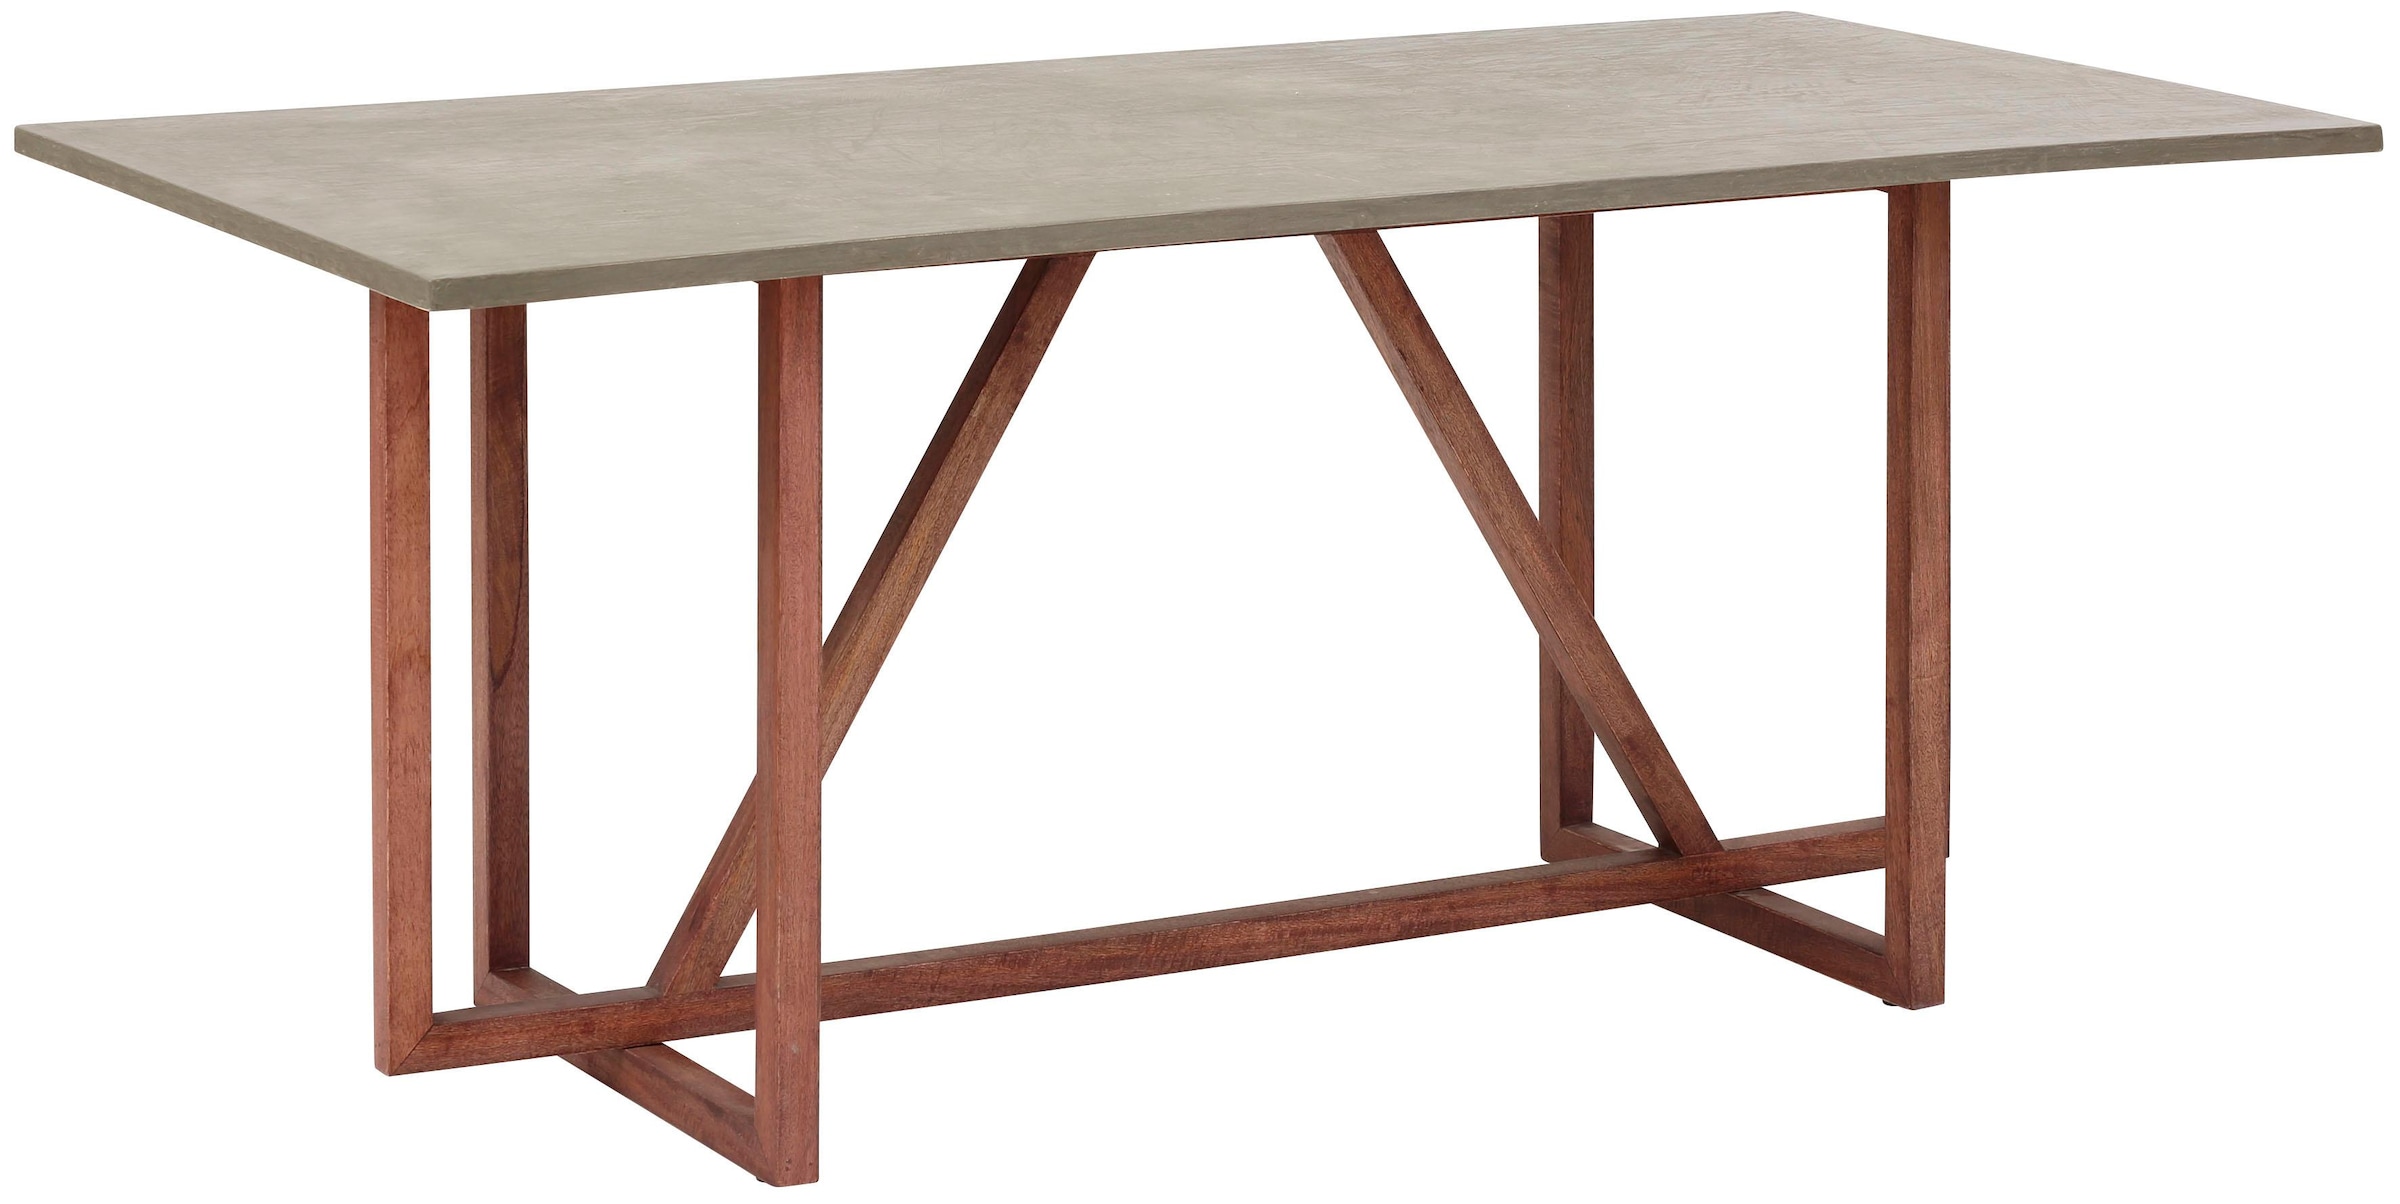 Home affaire Esstisch »Beton«, aus massiven Mangoholz, Tischplatte im  Beton-Optik Look, Breite 180 cm günstig kaufen